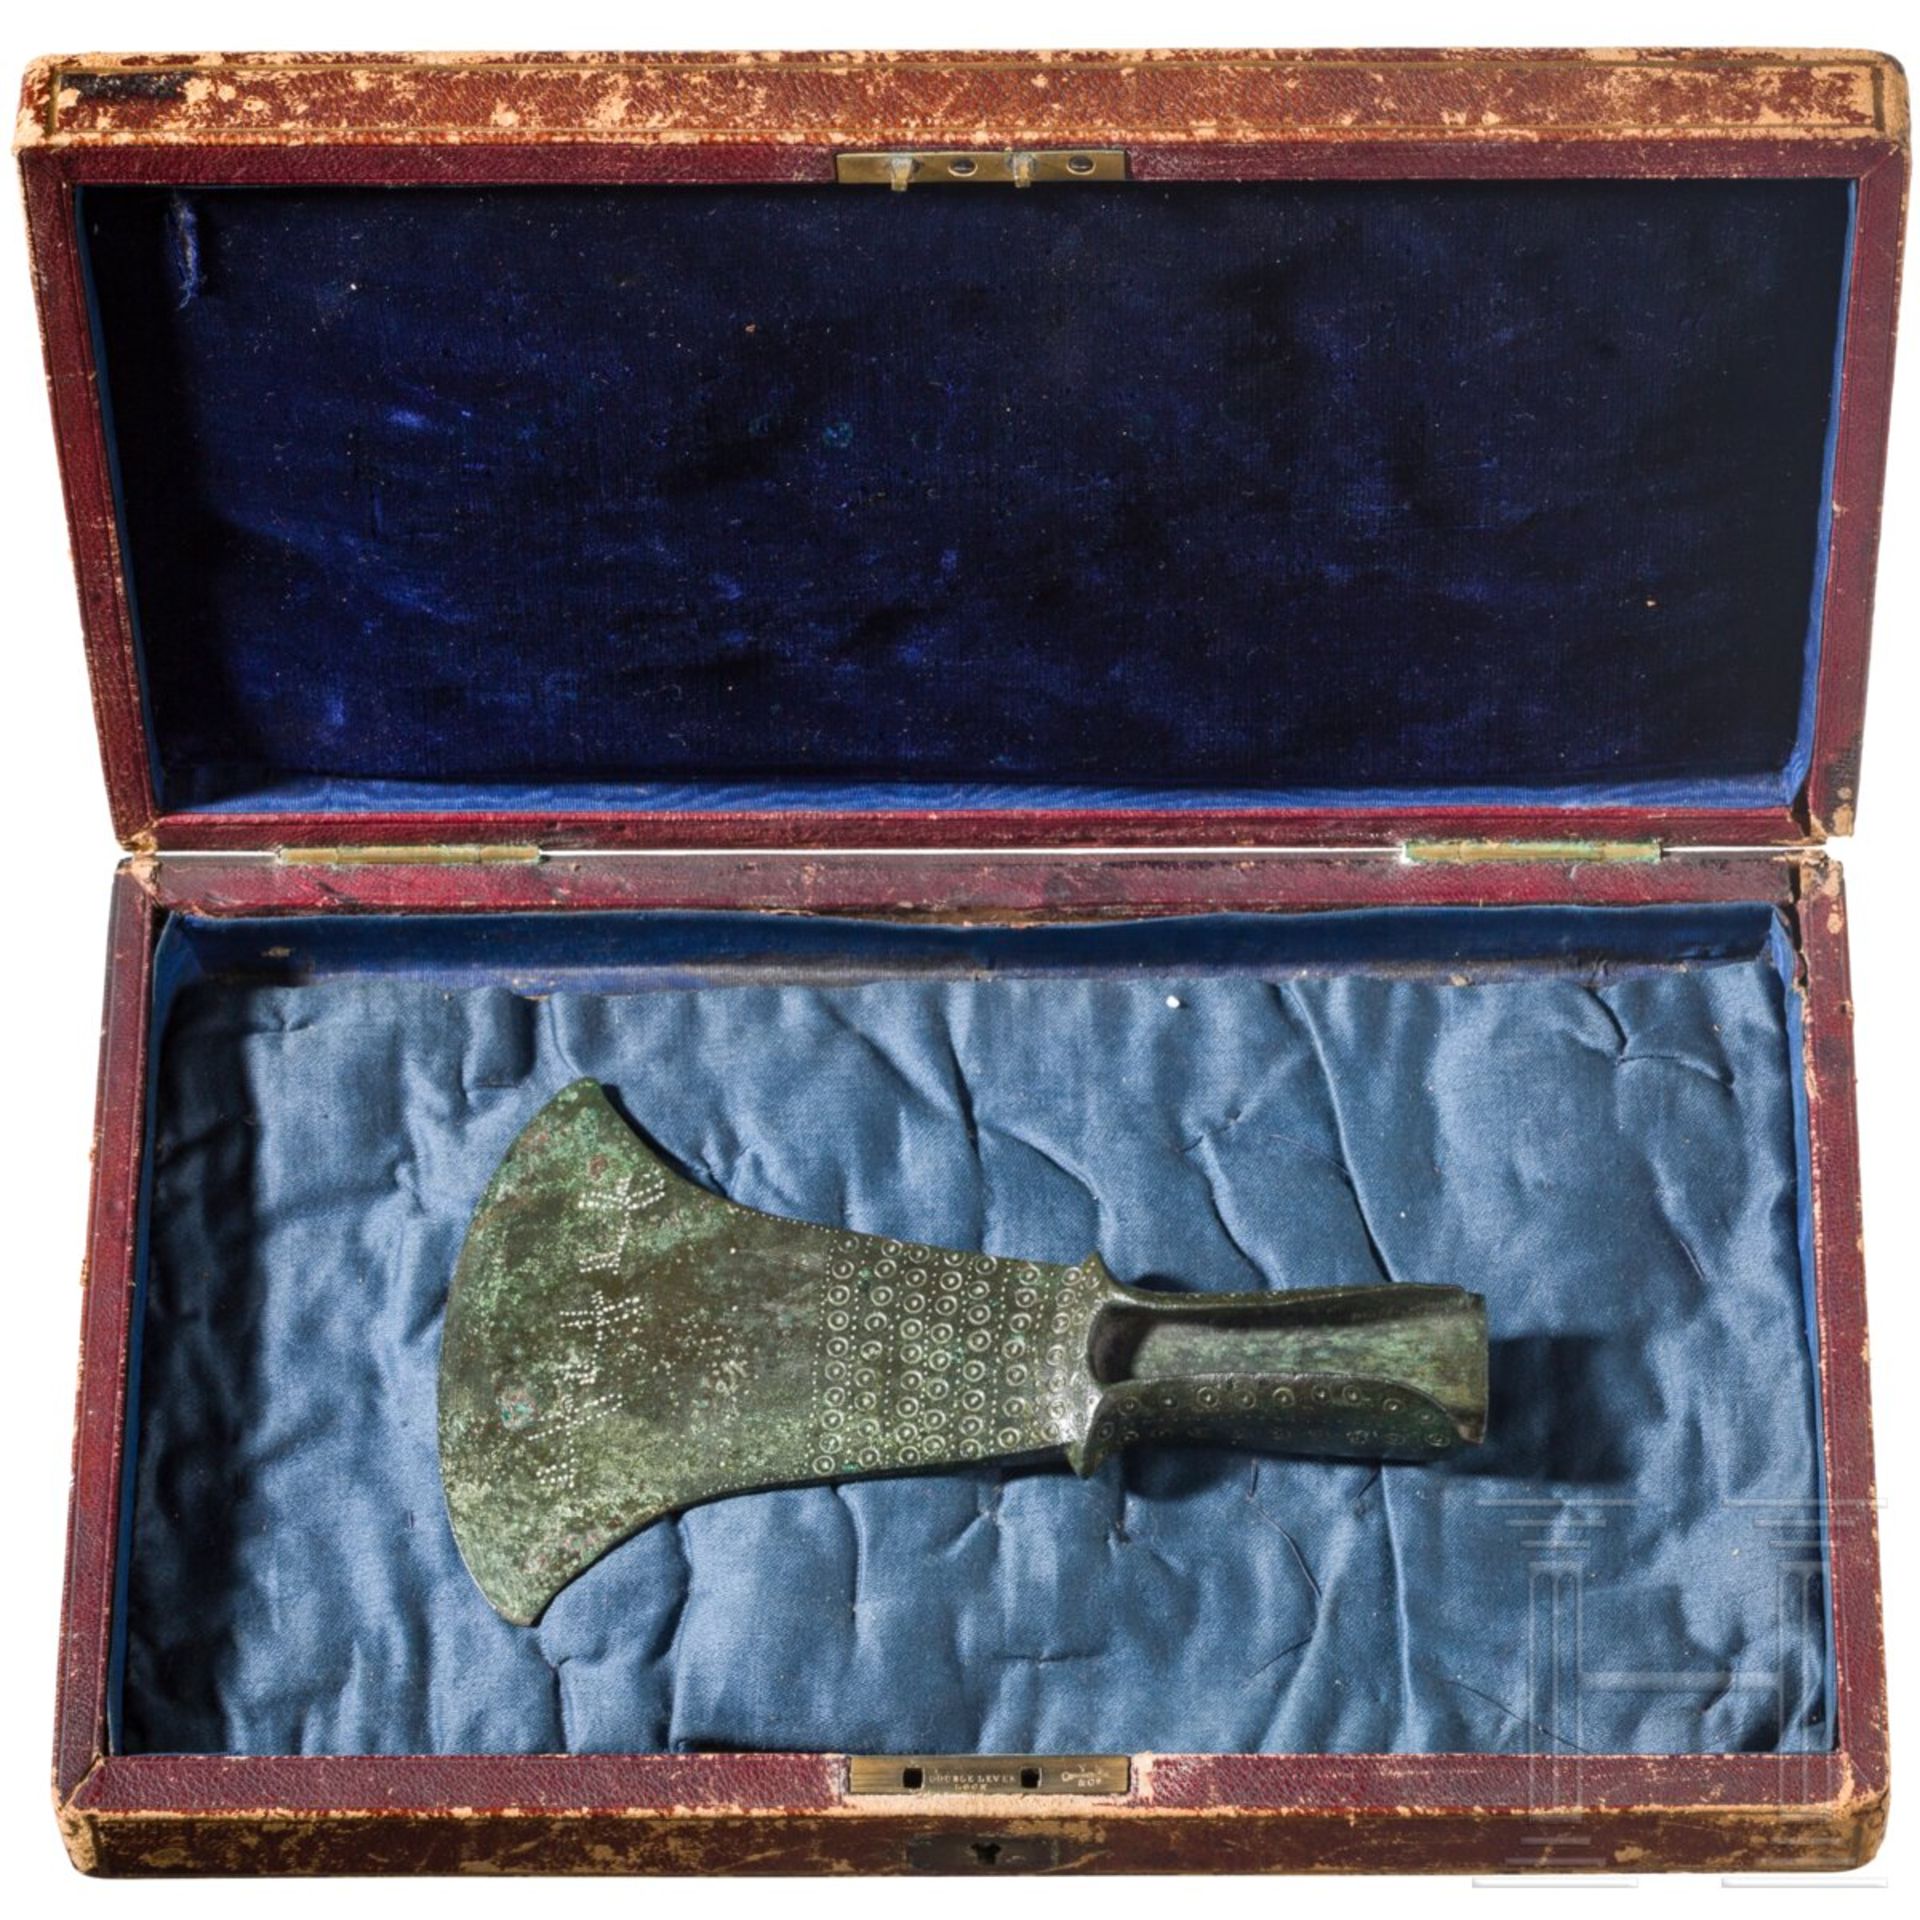 Bronzebeil für zeremonielle Zwecke, etruskisch, 2. Hälfte 8. - frühes 7. Jhdt. v. Chr.